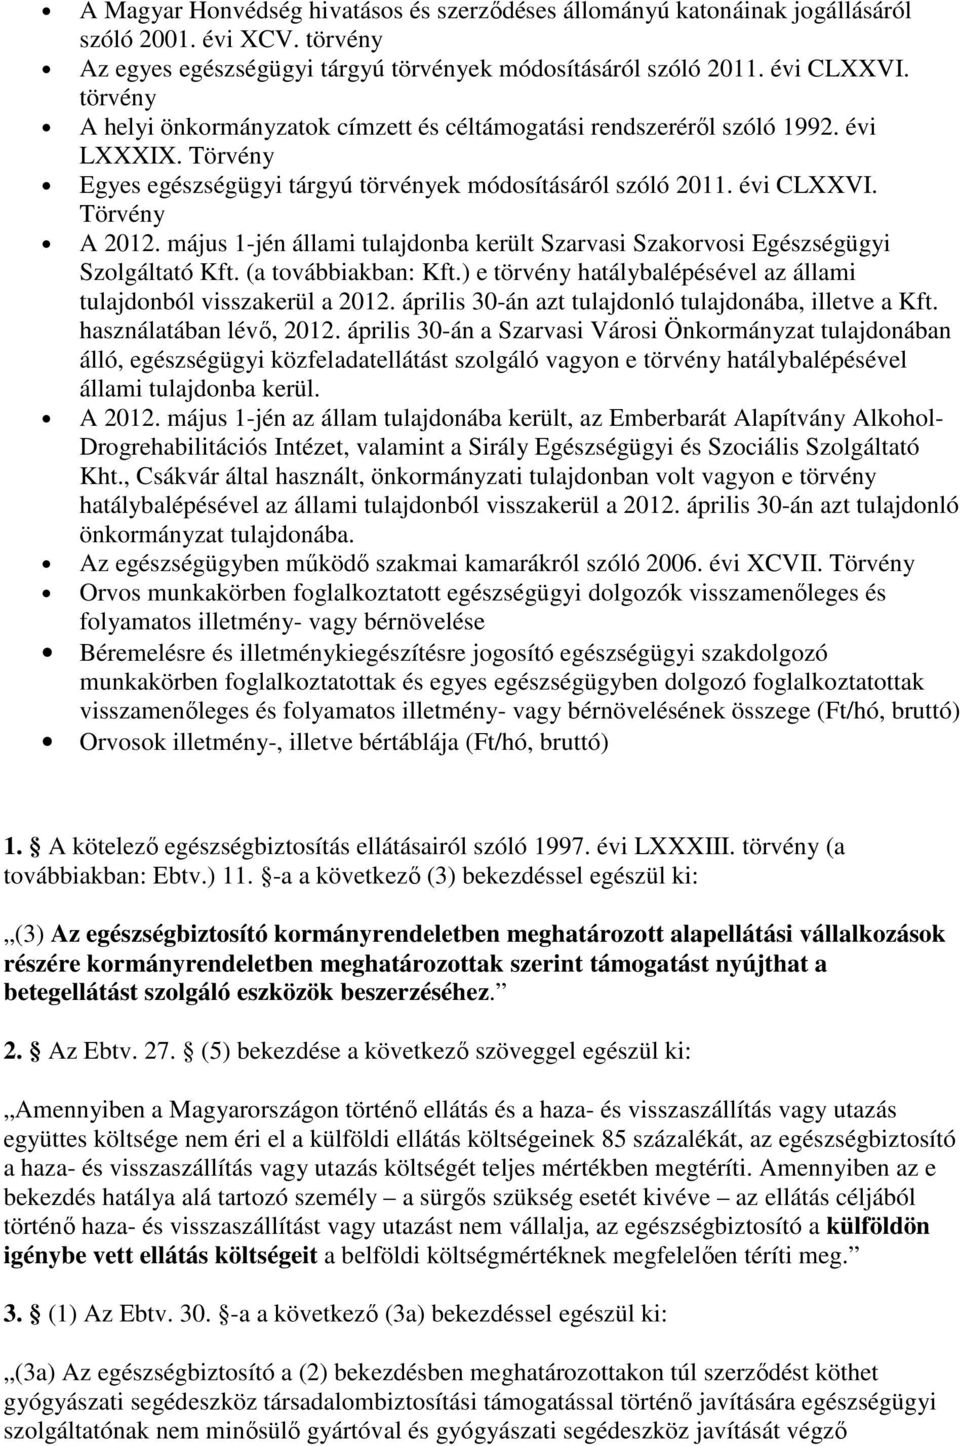 május 1-jén állami tulajdonba került Szarvasi Szakorvosi Egészségügyi Szolgáltató Kft. (a továbbiakban: Kft.) e törvény hatálybalépésével az állami tulajdonból visszakerül a 2012.